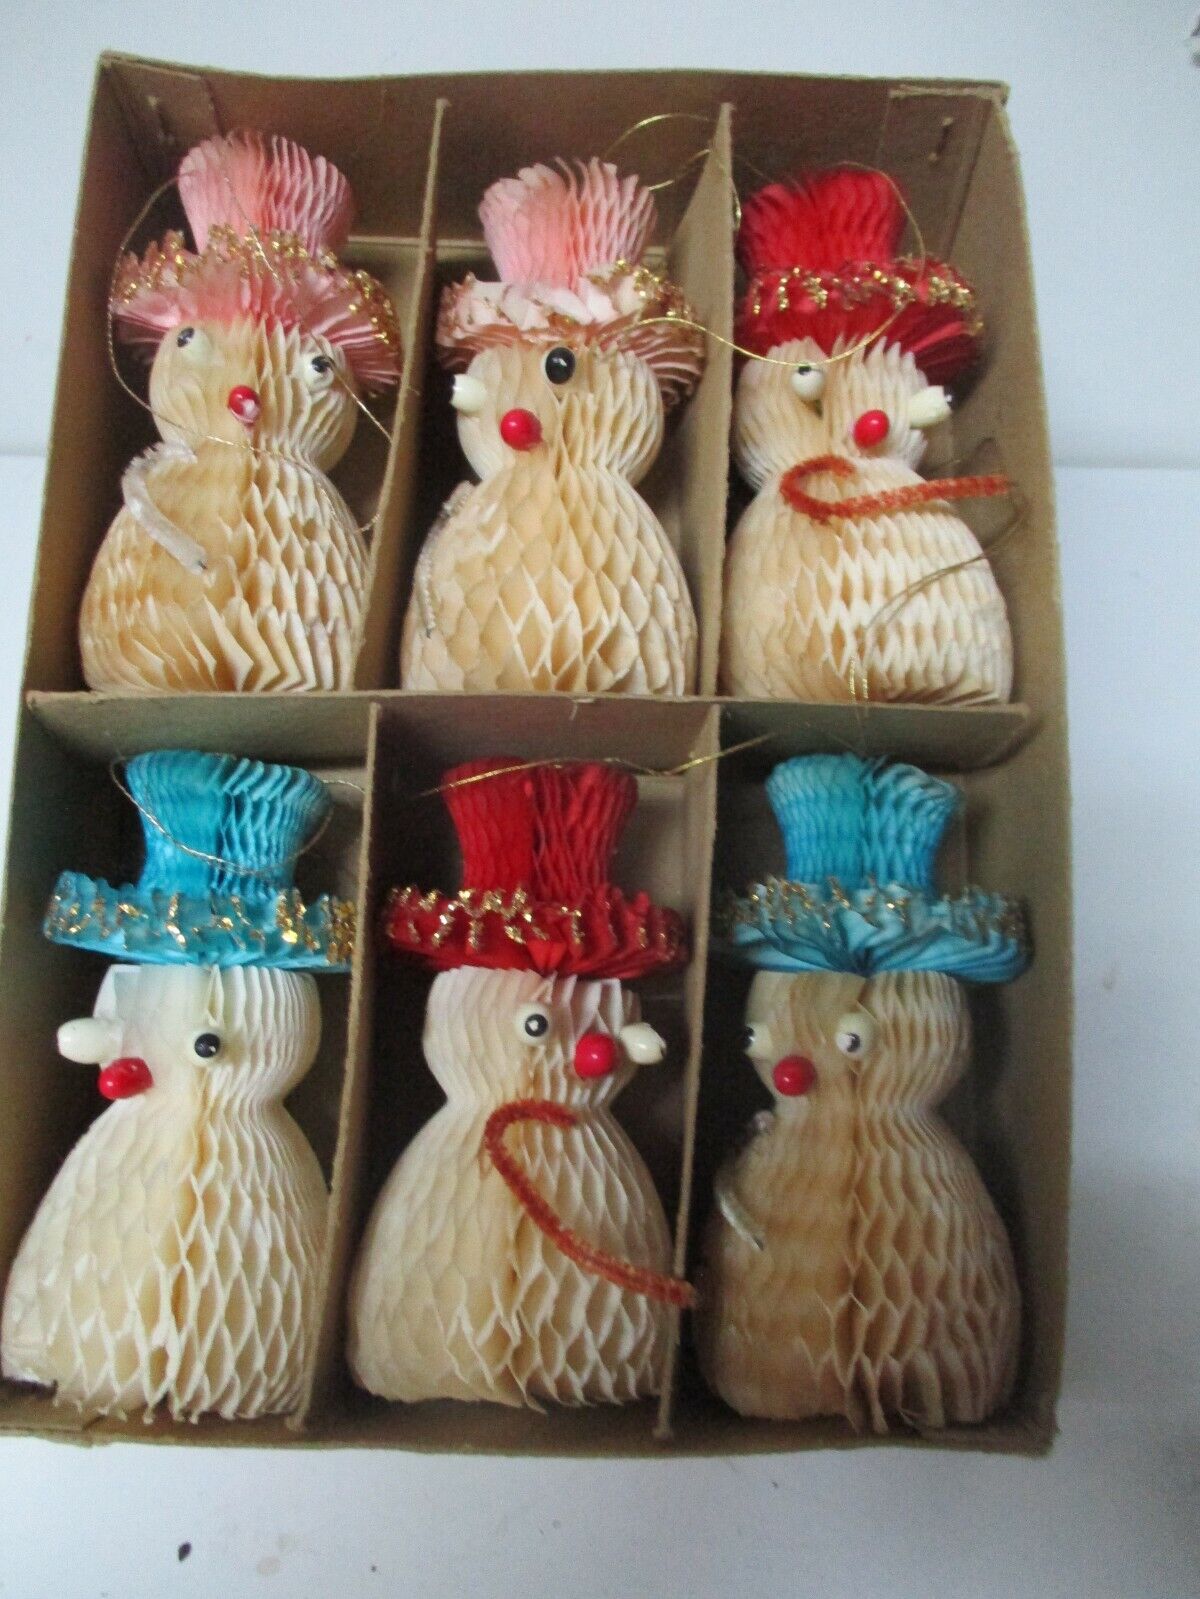 6 Vintage Japan Honeycomb Christmas Ornaments - SNOWMEN Zamówienie wysyłkowe